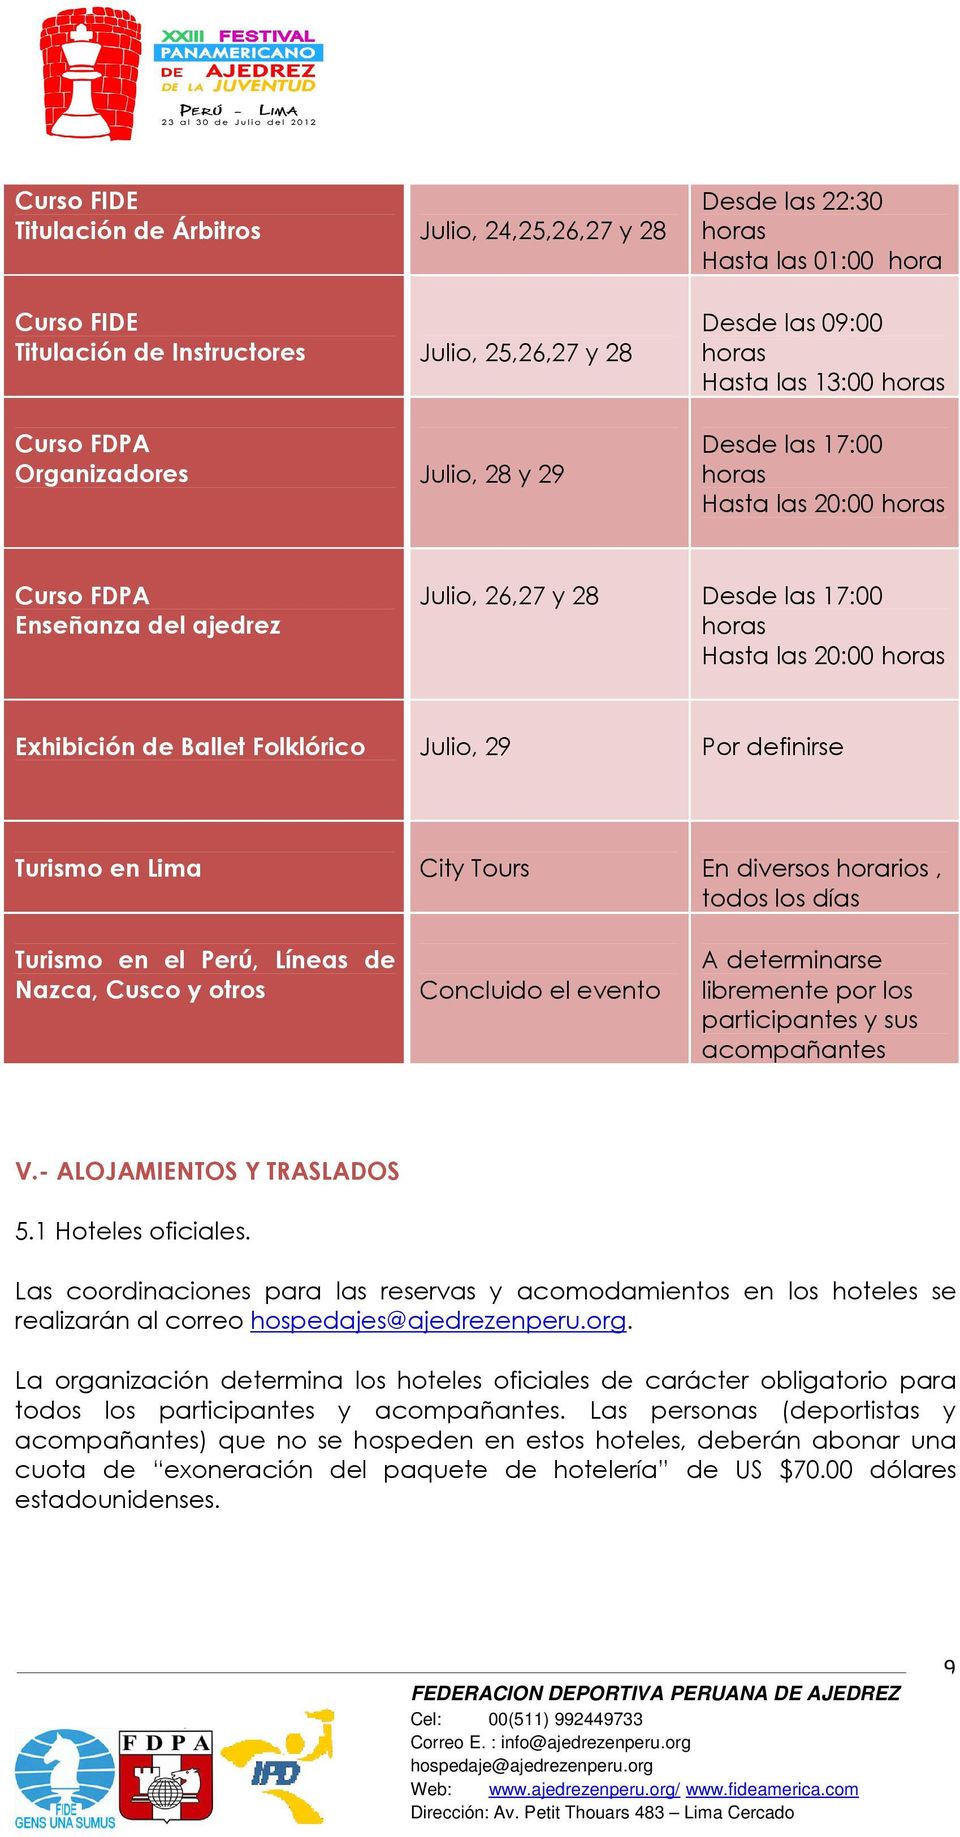 Ballet Folklórico Julio, 29 Por definirse Turismo en Lima City Tours En diversos horarios, todos los días Turismo en el Perú, Líneas de Nazca, Cusco y otros Concluido el evento A determinarse